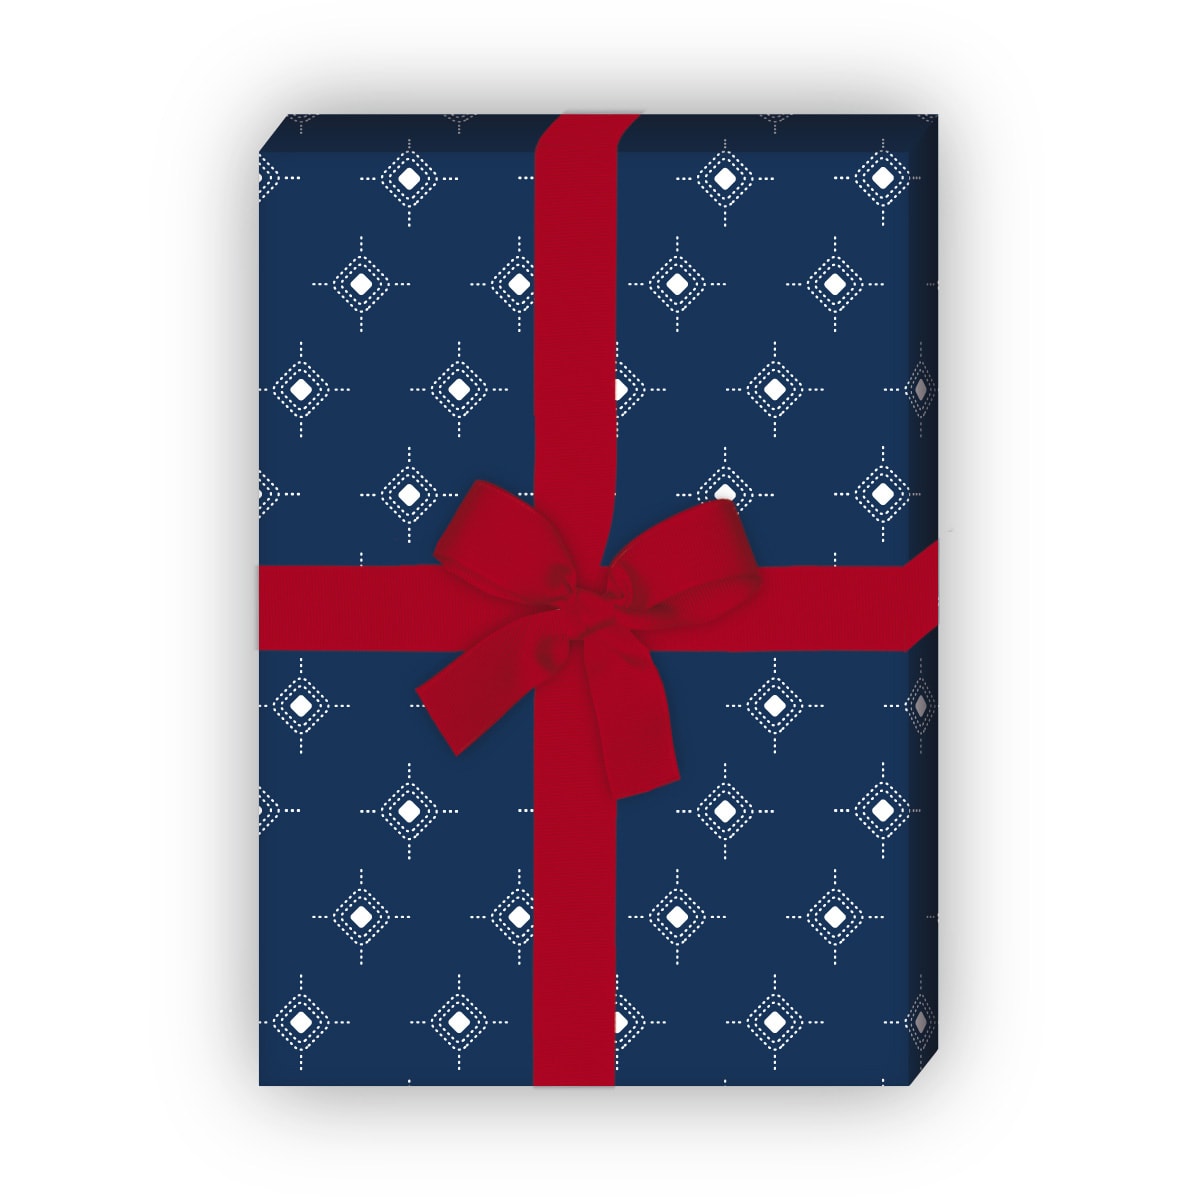 Kartenkaufrausch: Indigo Geschenkpapier mit kleinem aus unserer Designer Papeterie in dunkel blau